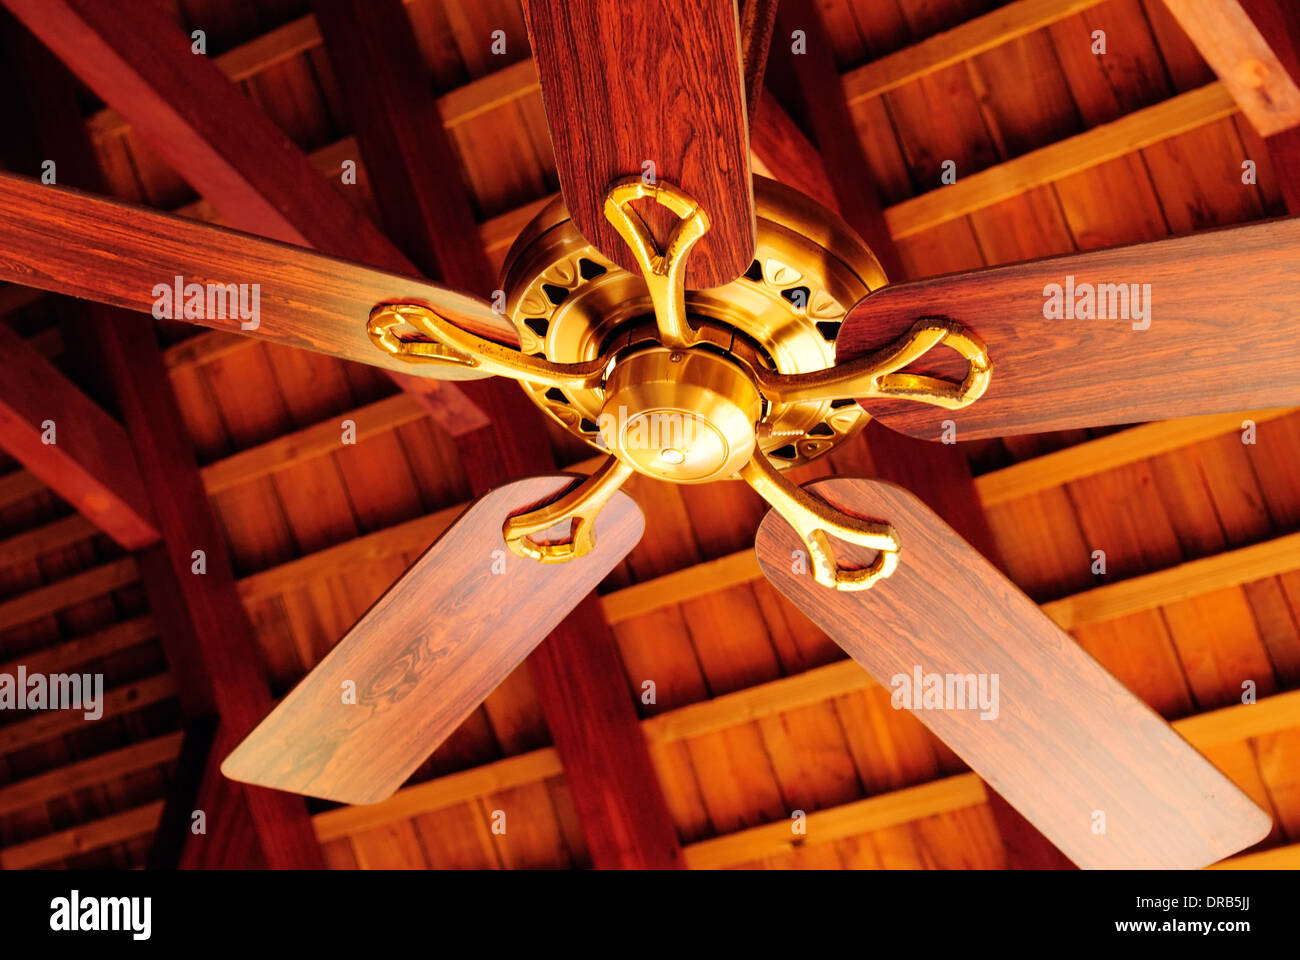 Wooden ceiling fan Stock Photo